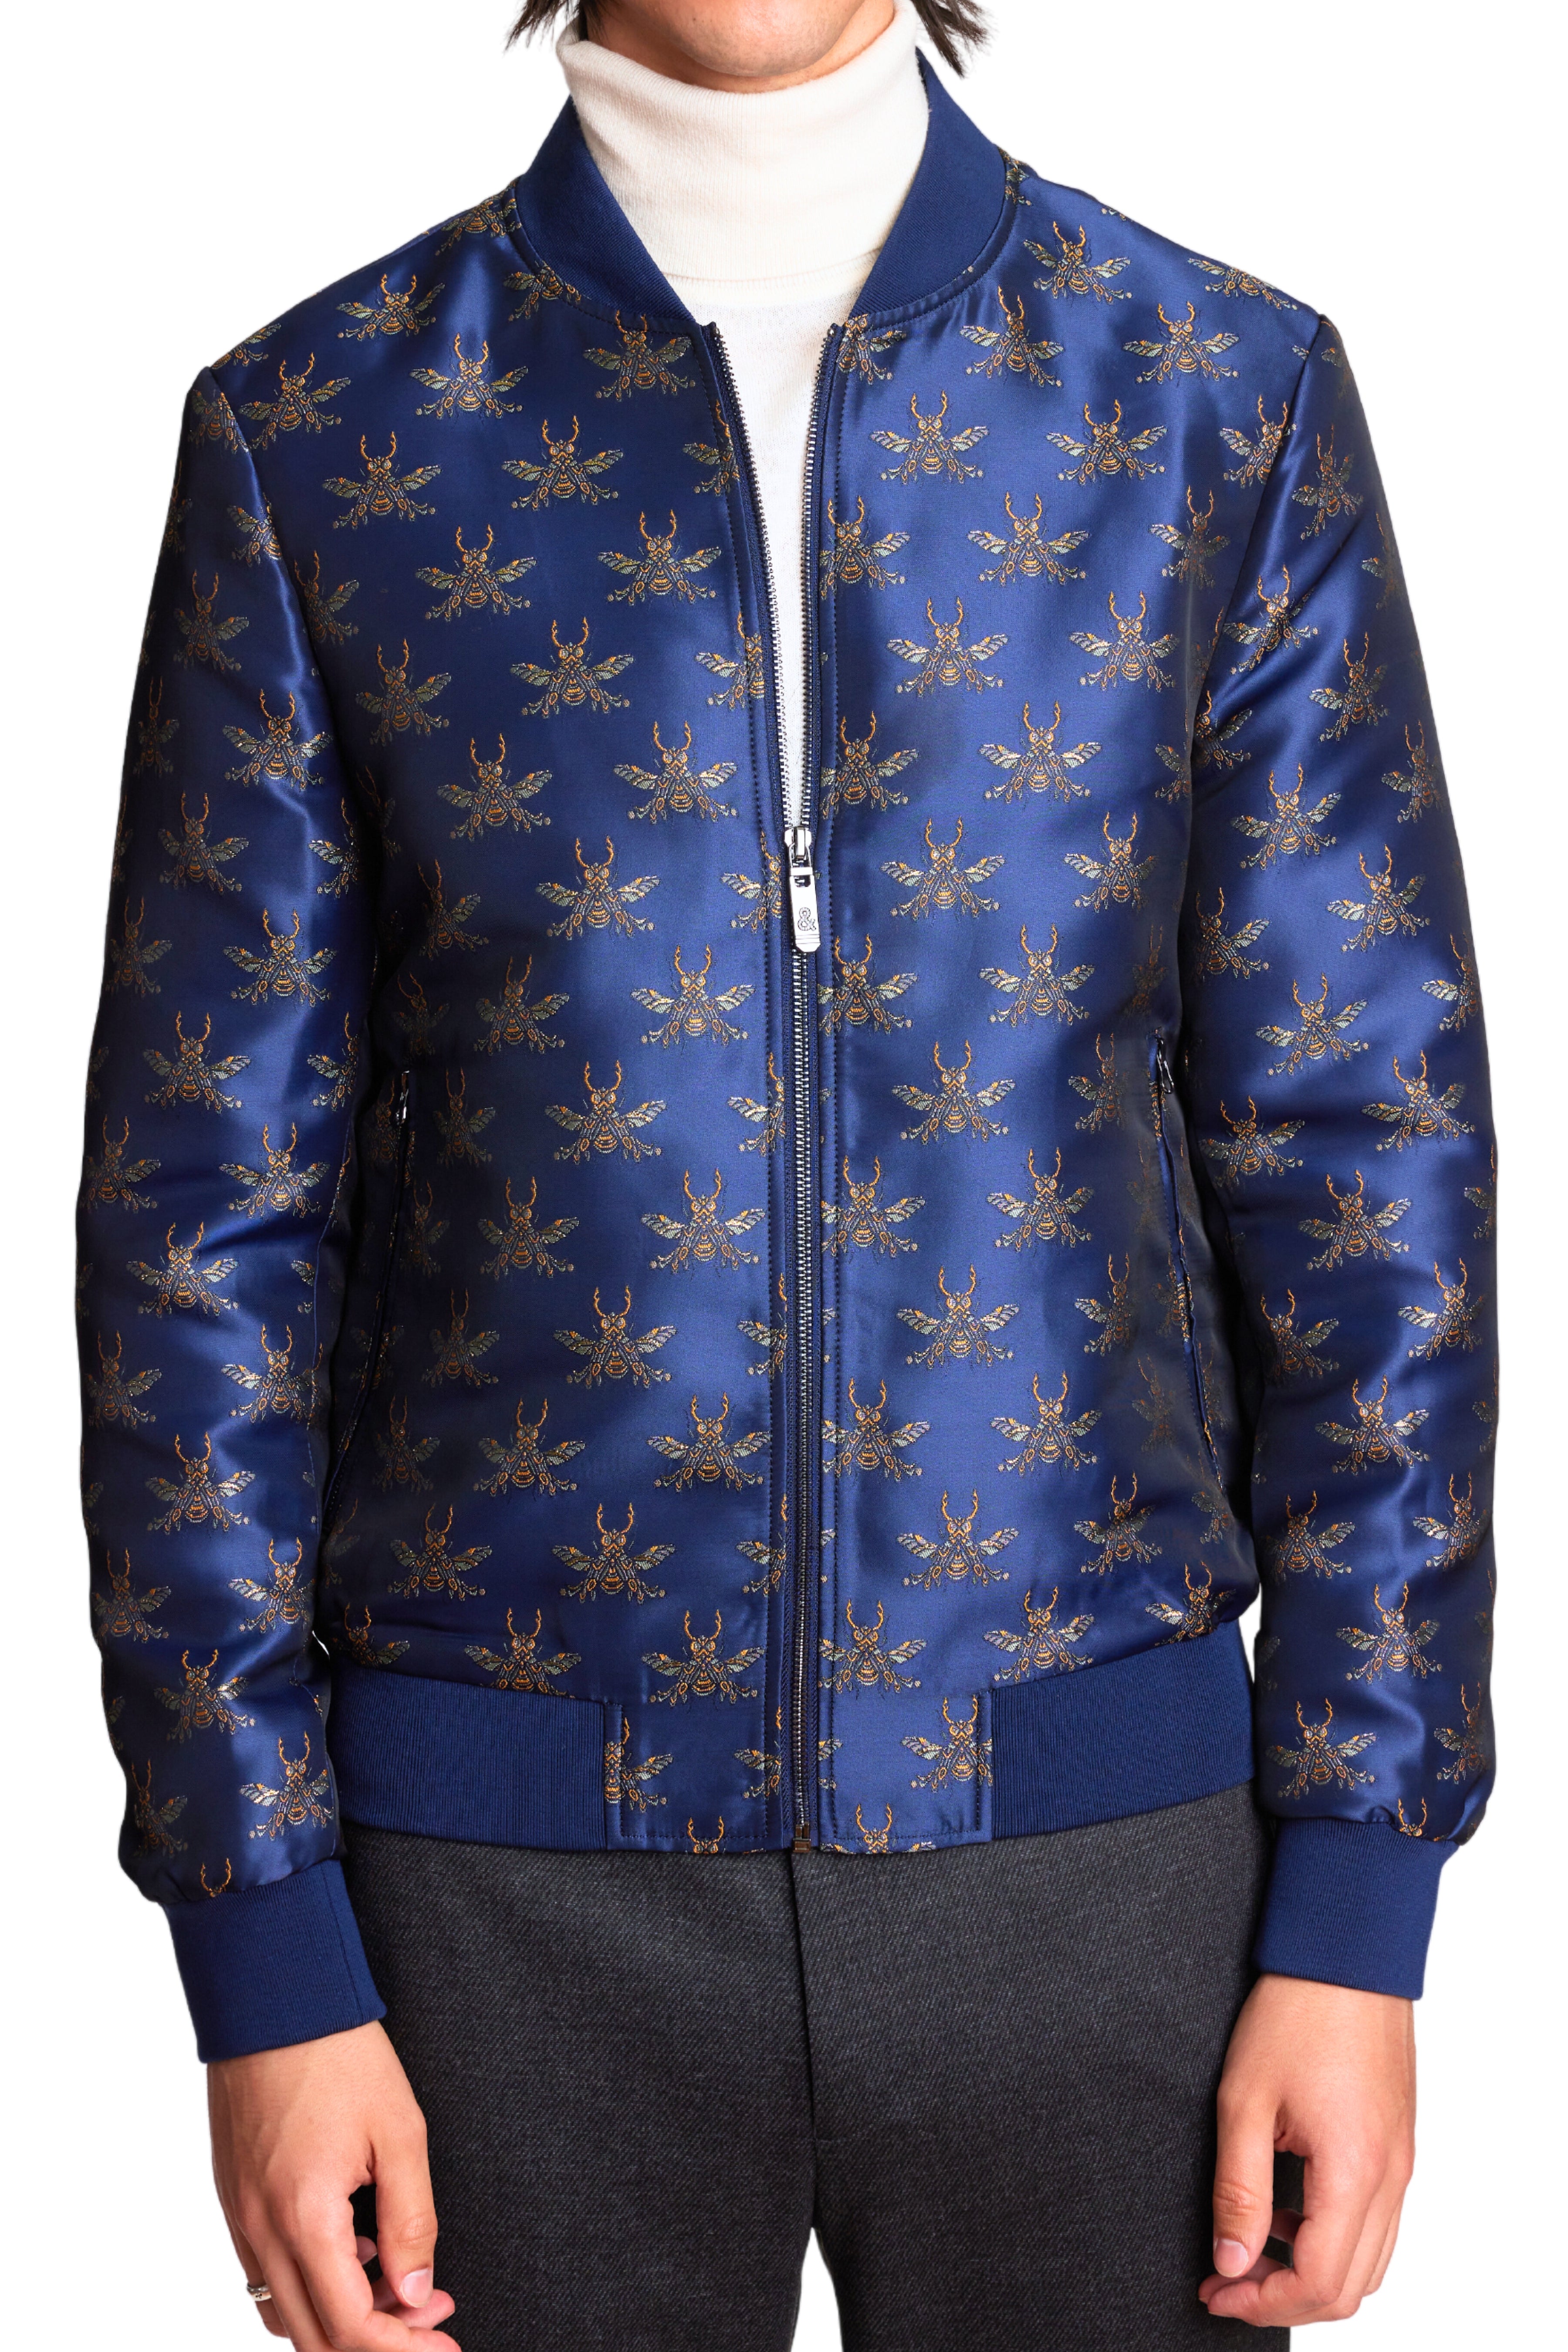 Louis Vuitton Bomber Coats, Jackets & Vests for Men for Sale